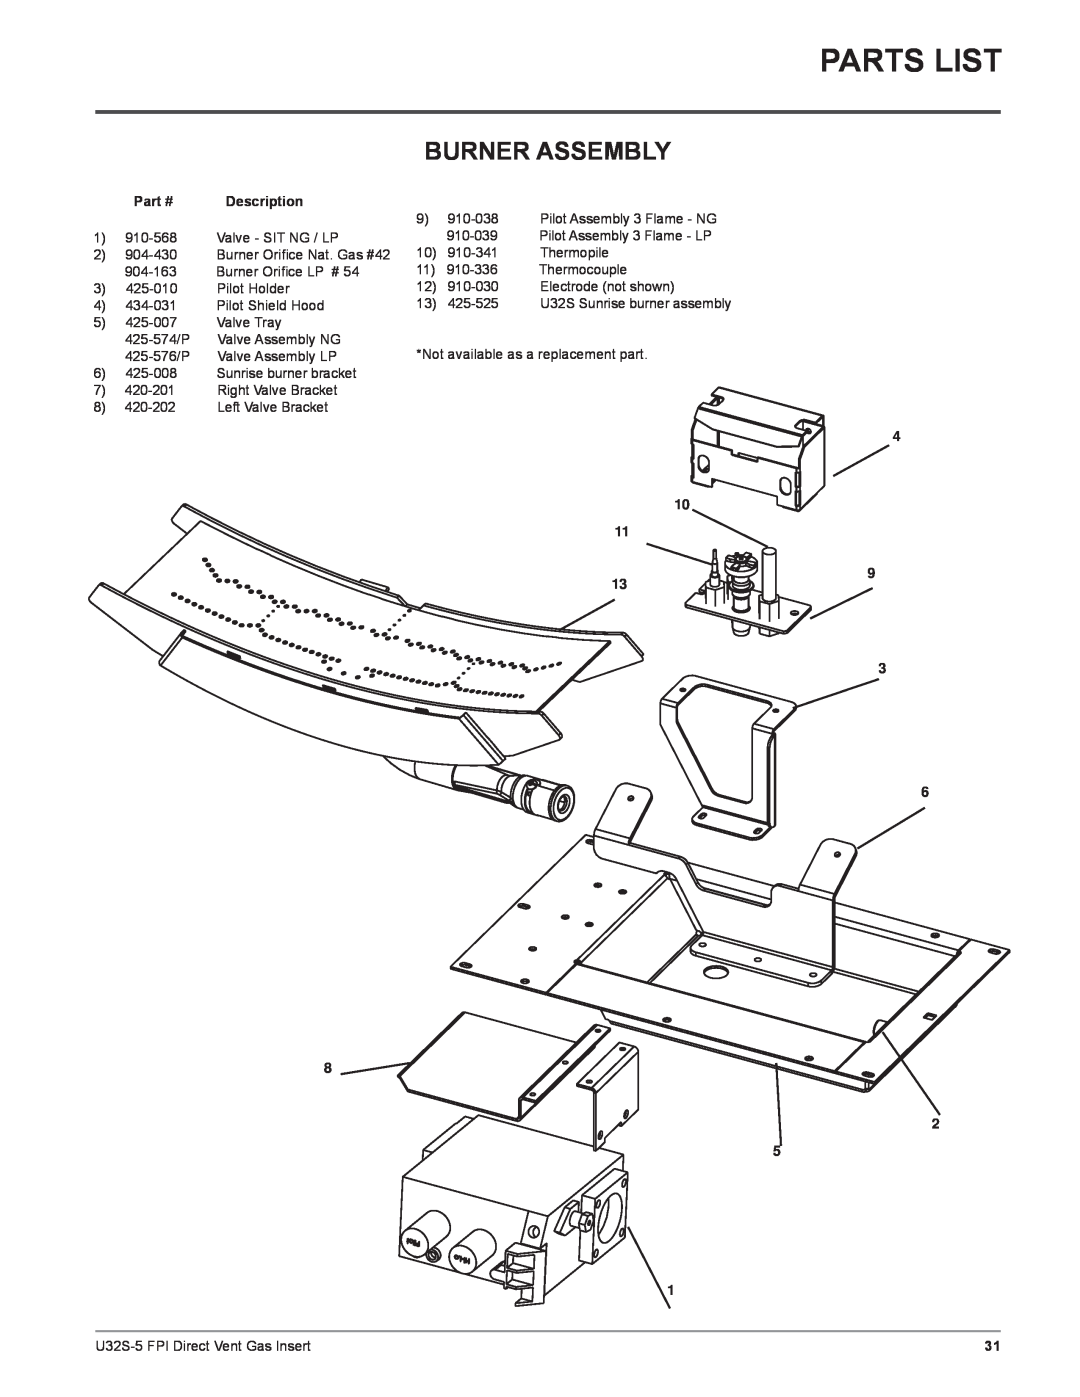 Regency U32S-LP5, U32S-NG5 installation manual Parts List, Burner Assembly, Description, 4 10 11 9 13 